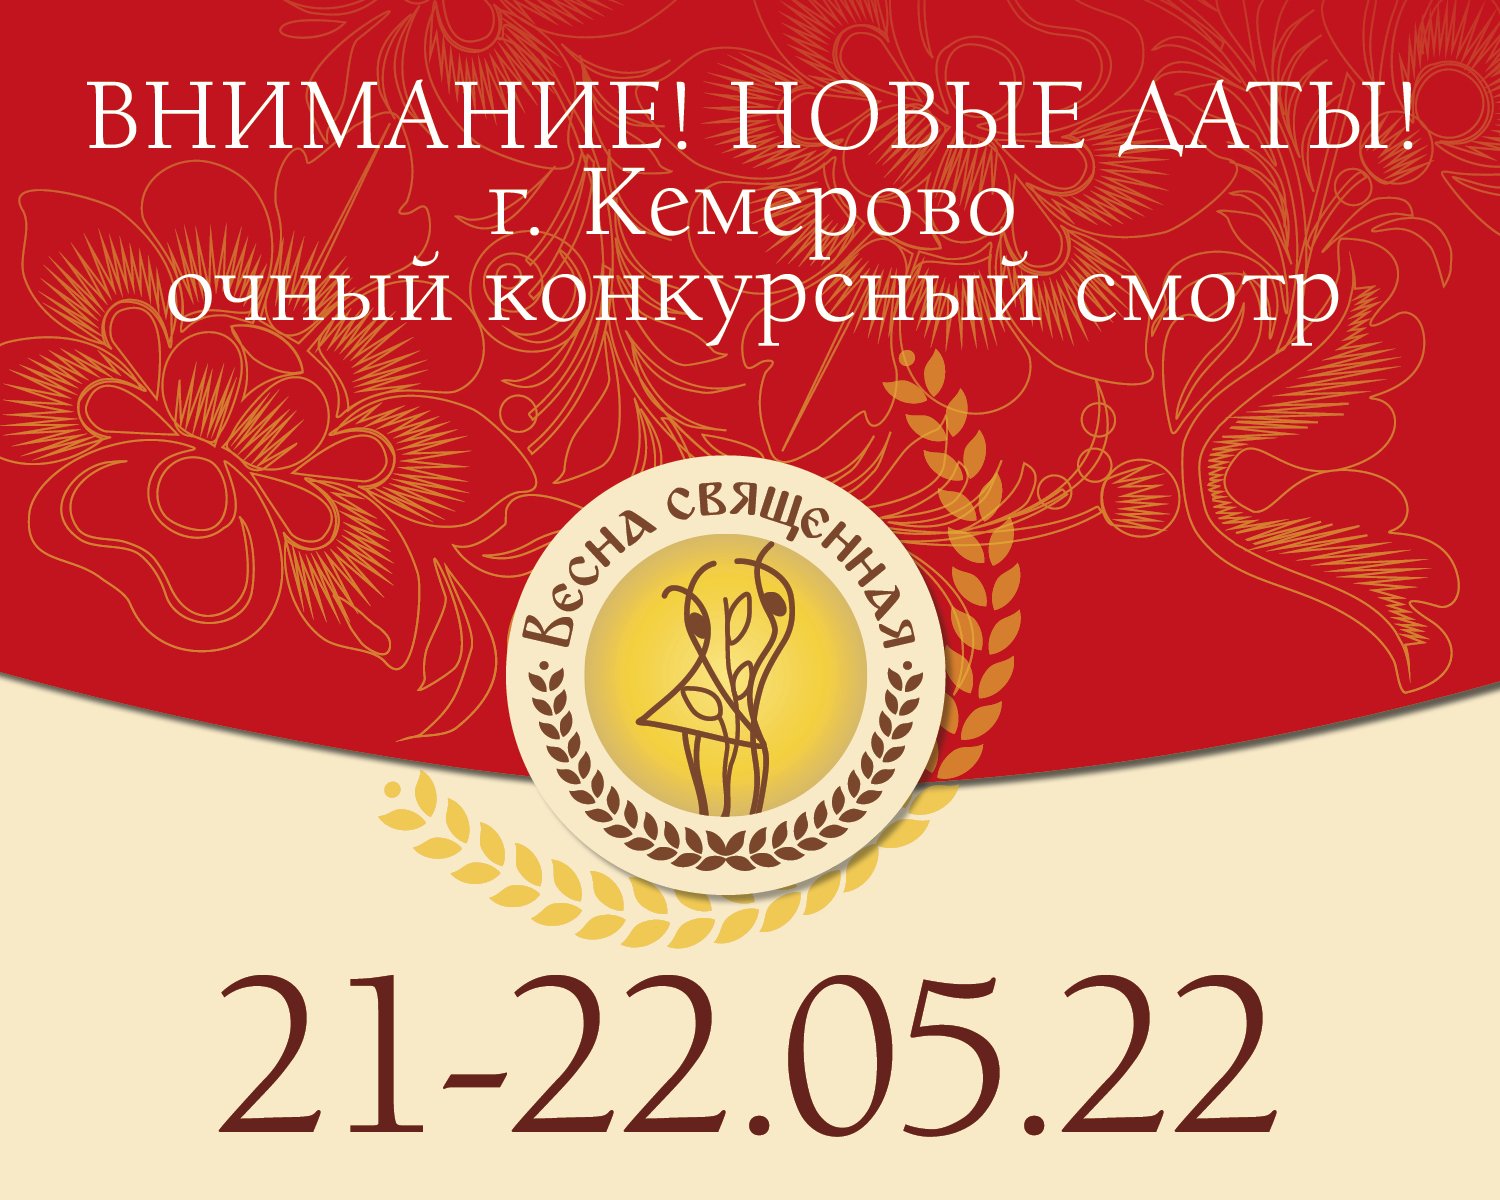 Дата проведения очного этапа конкурса «Весна священная» в г. Кемерово изменилась